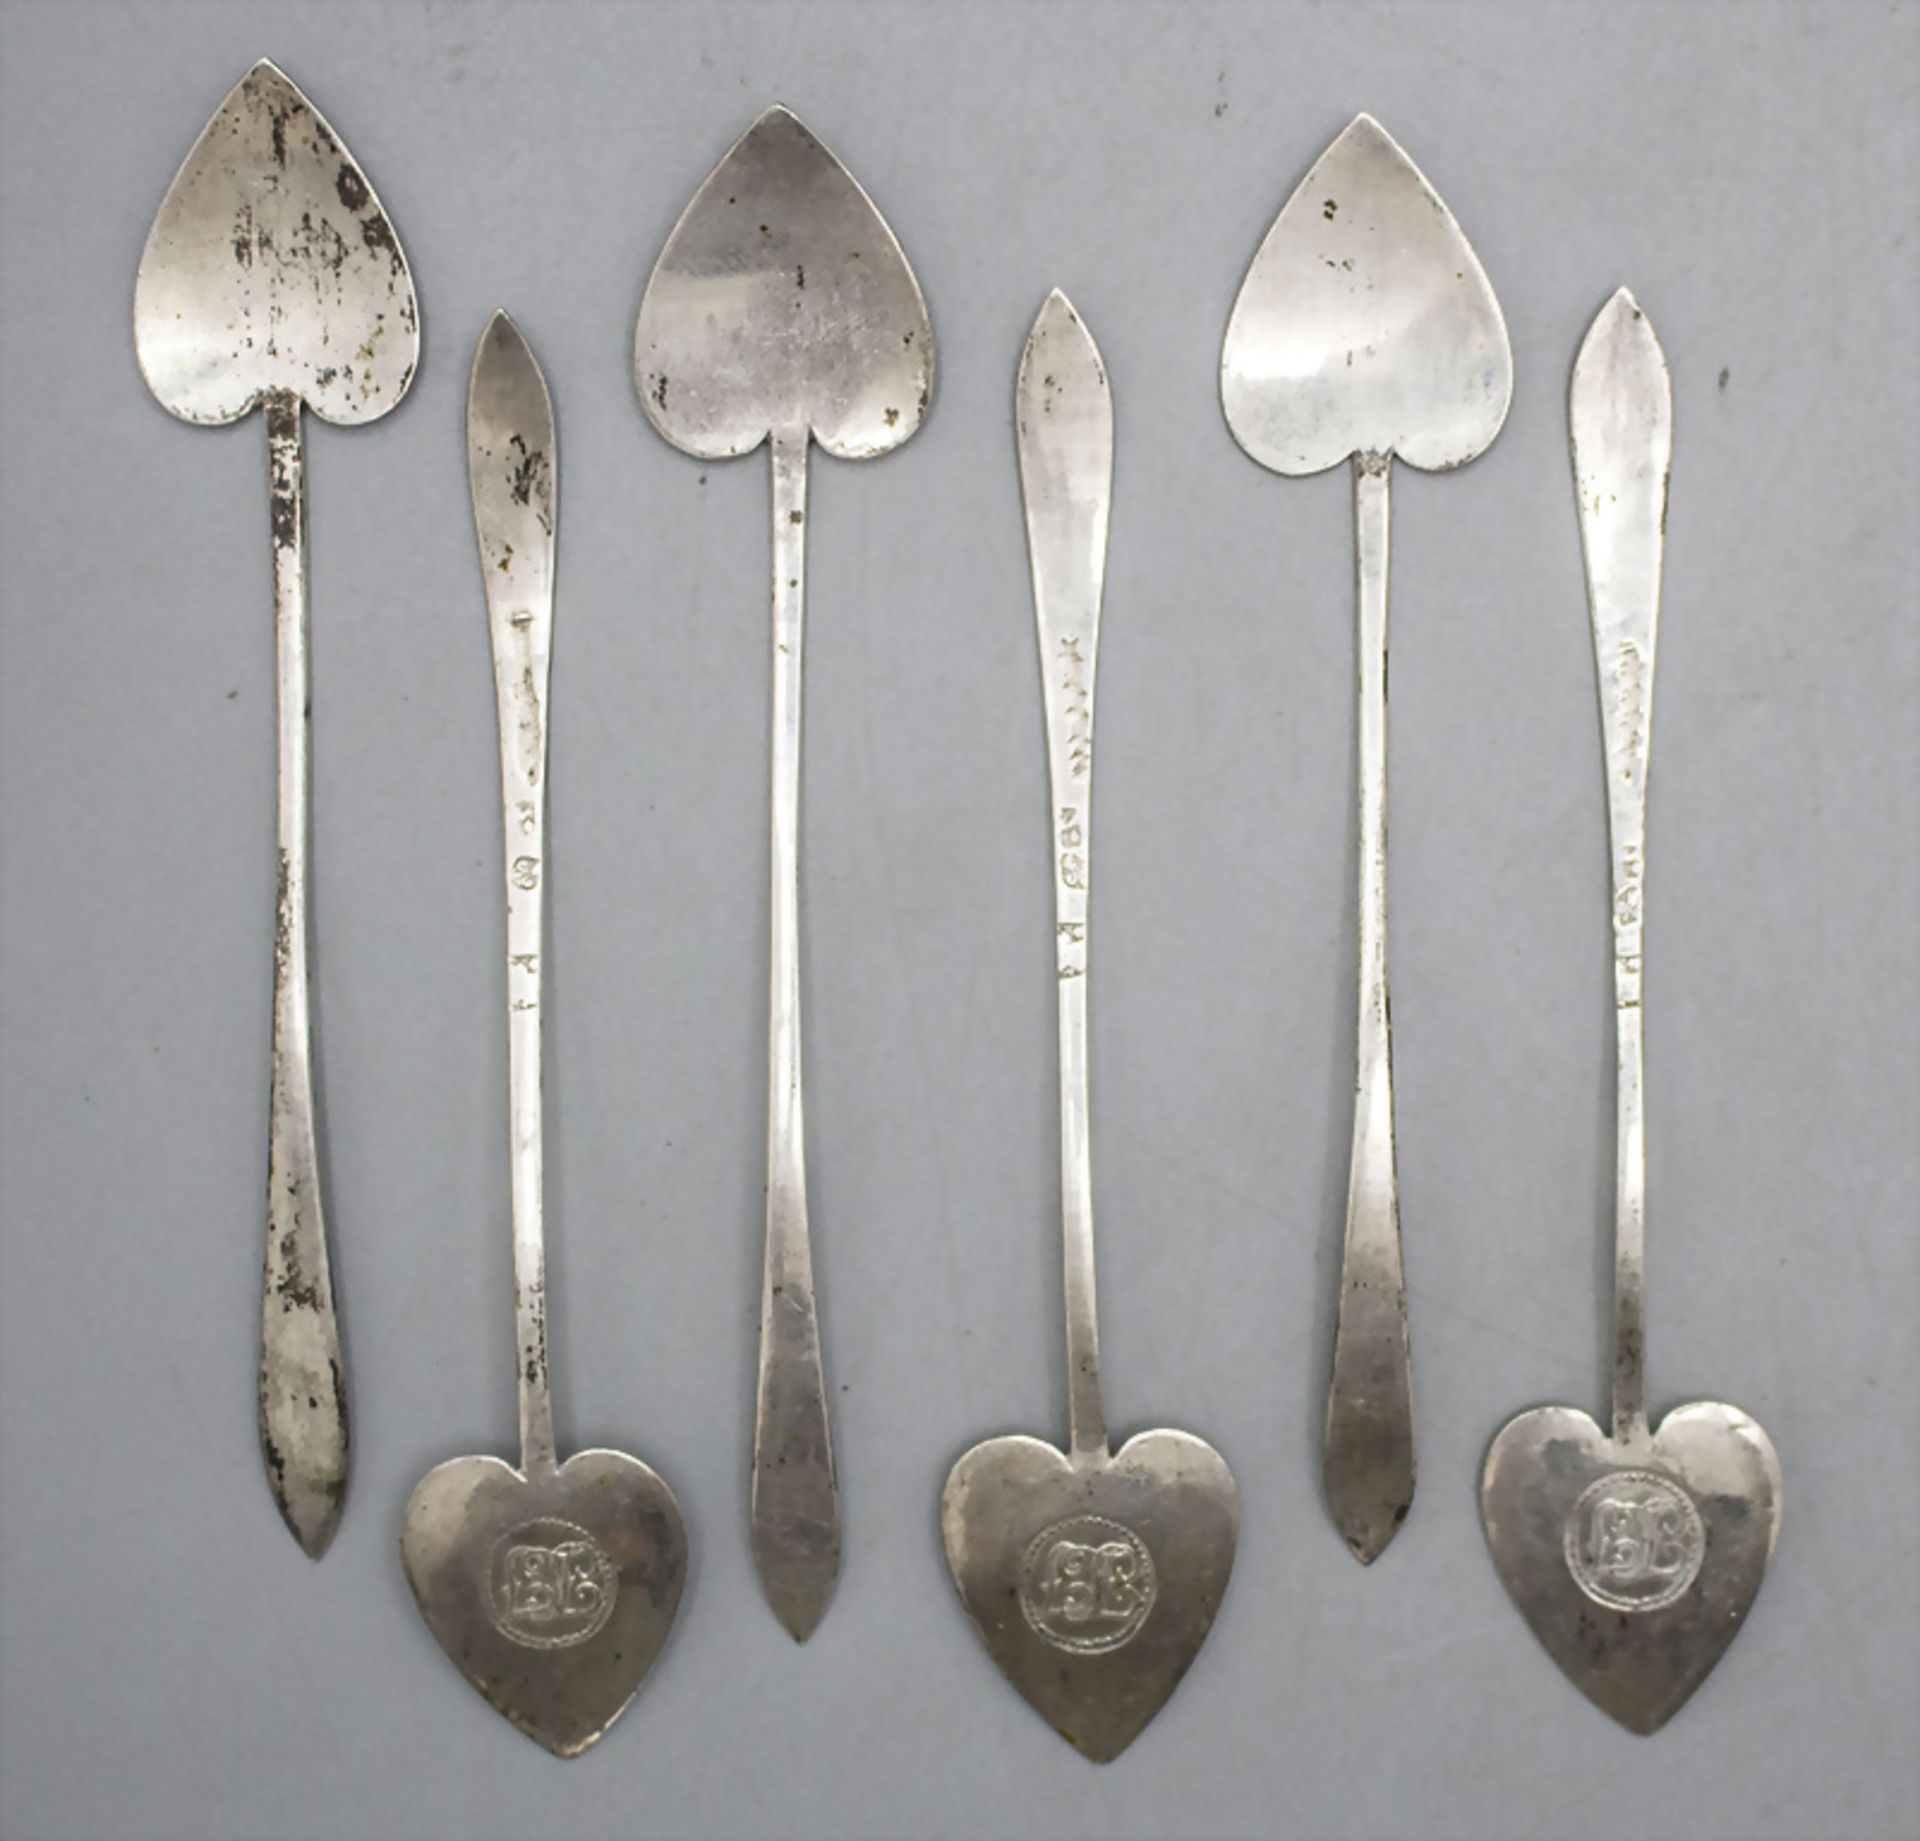 6 Empire Zuckerlöffel / 6 sugar spoons, wohl Belgien, um 1800